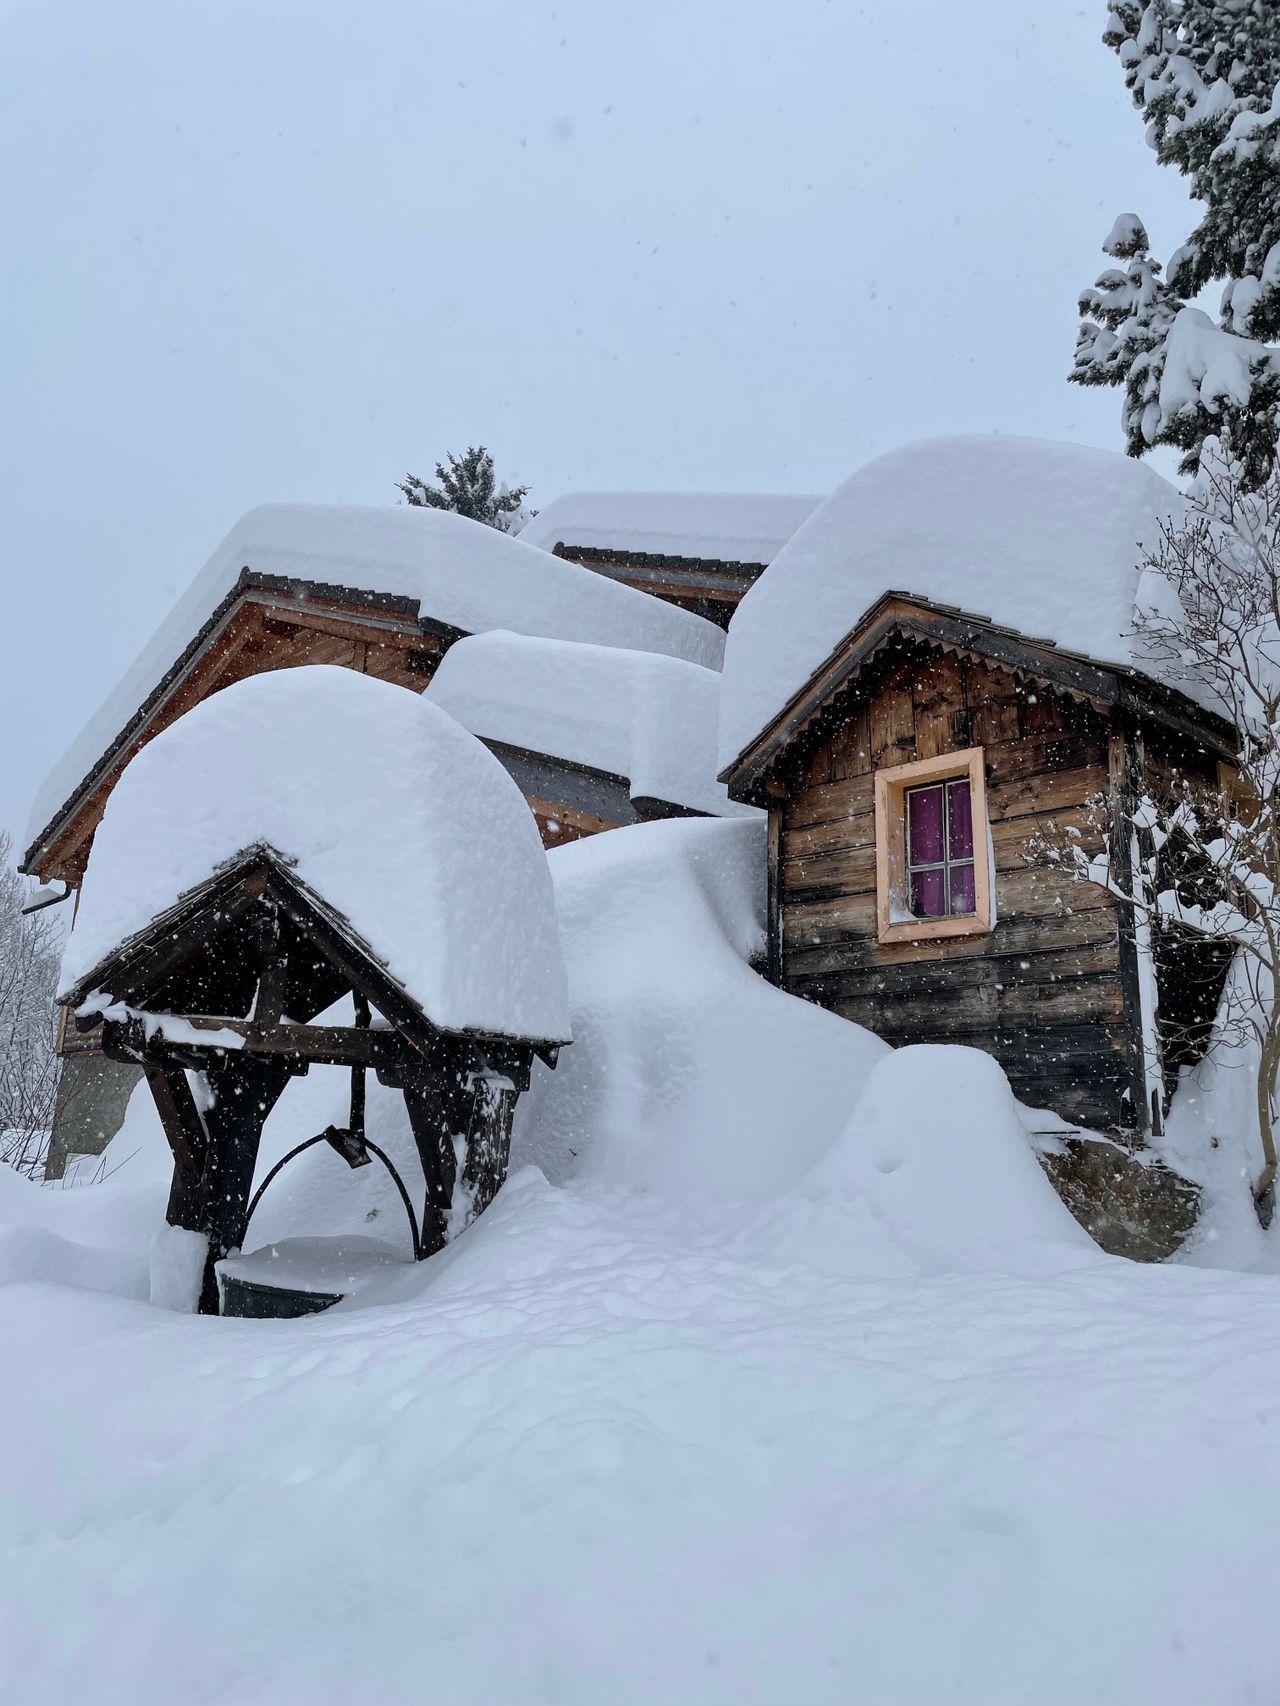 Même durant des hivers peu enneigés, il peut y avoir momentanément beaucoup de neige dans certaines régions, comme ici à la mi-décembre à Finhaut (VS, 1300 m).